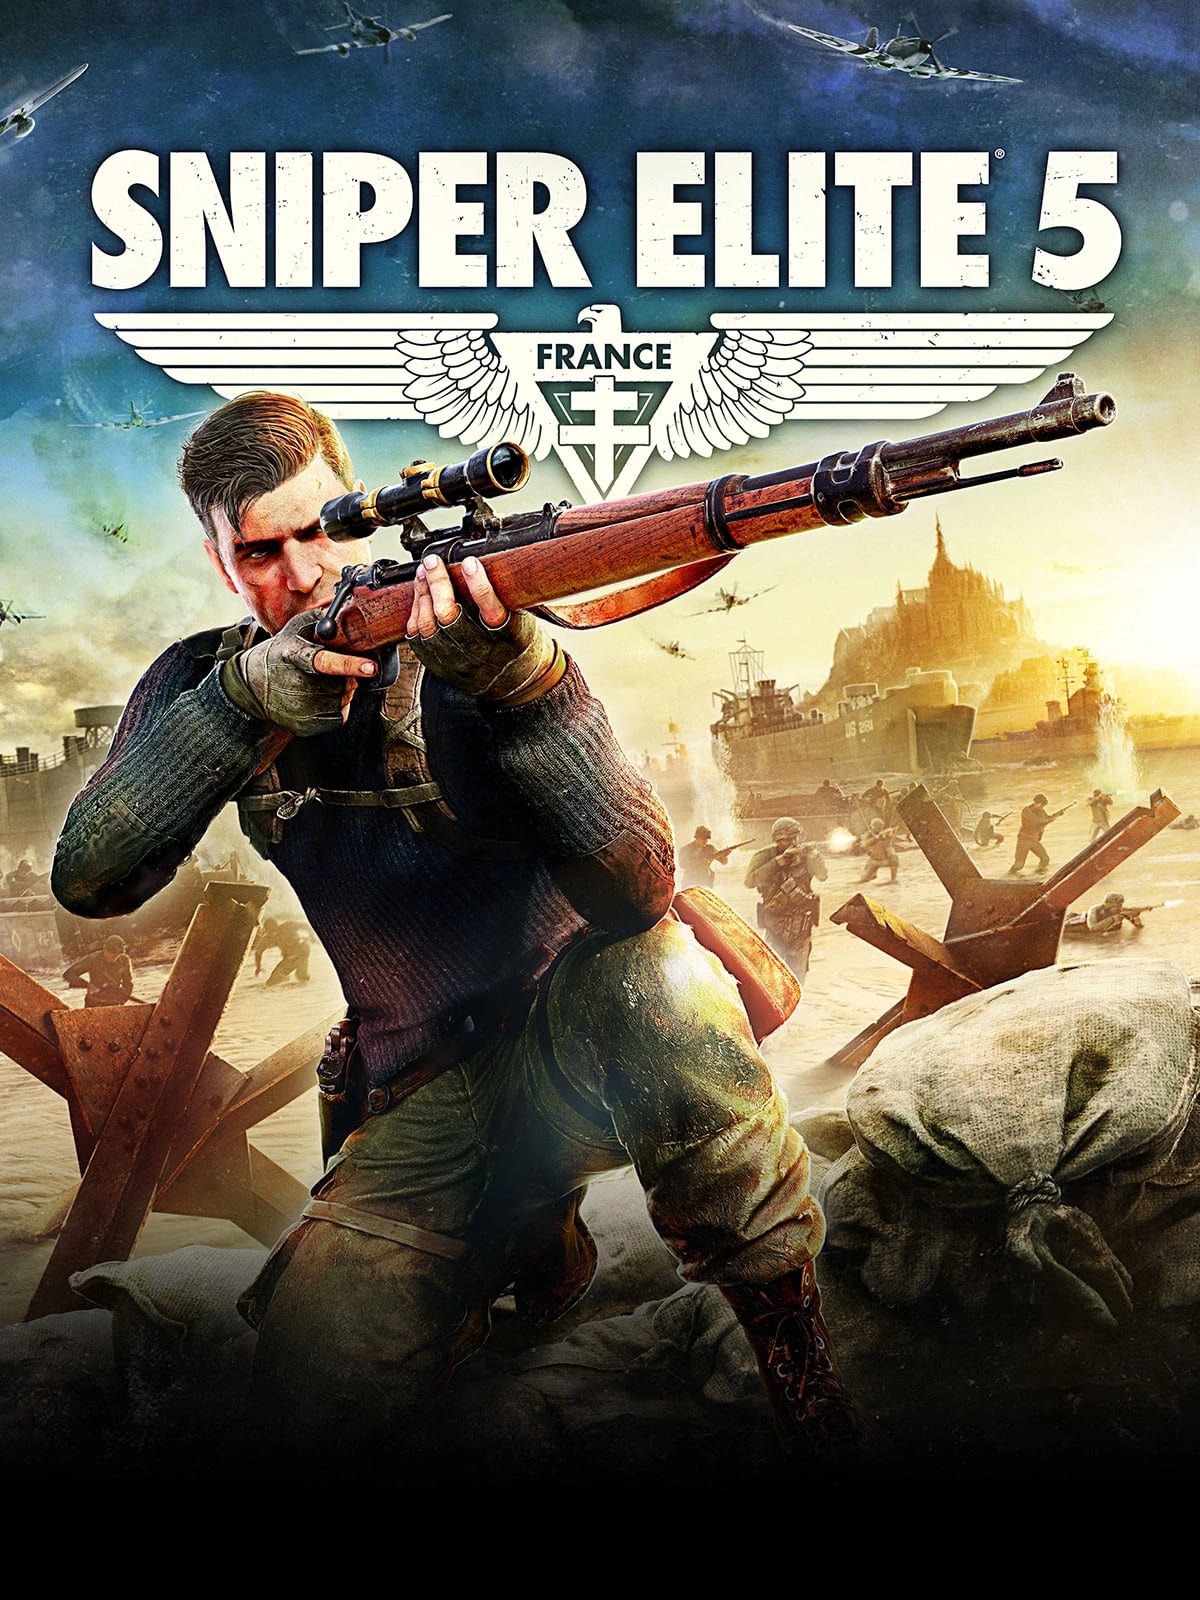 Sniper Elite 5 cover art work